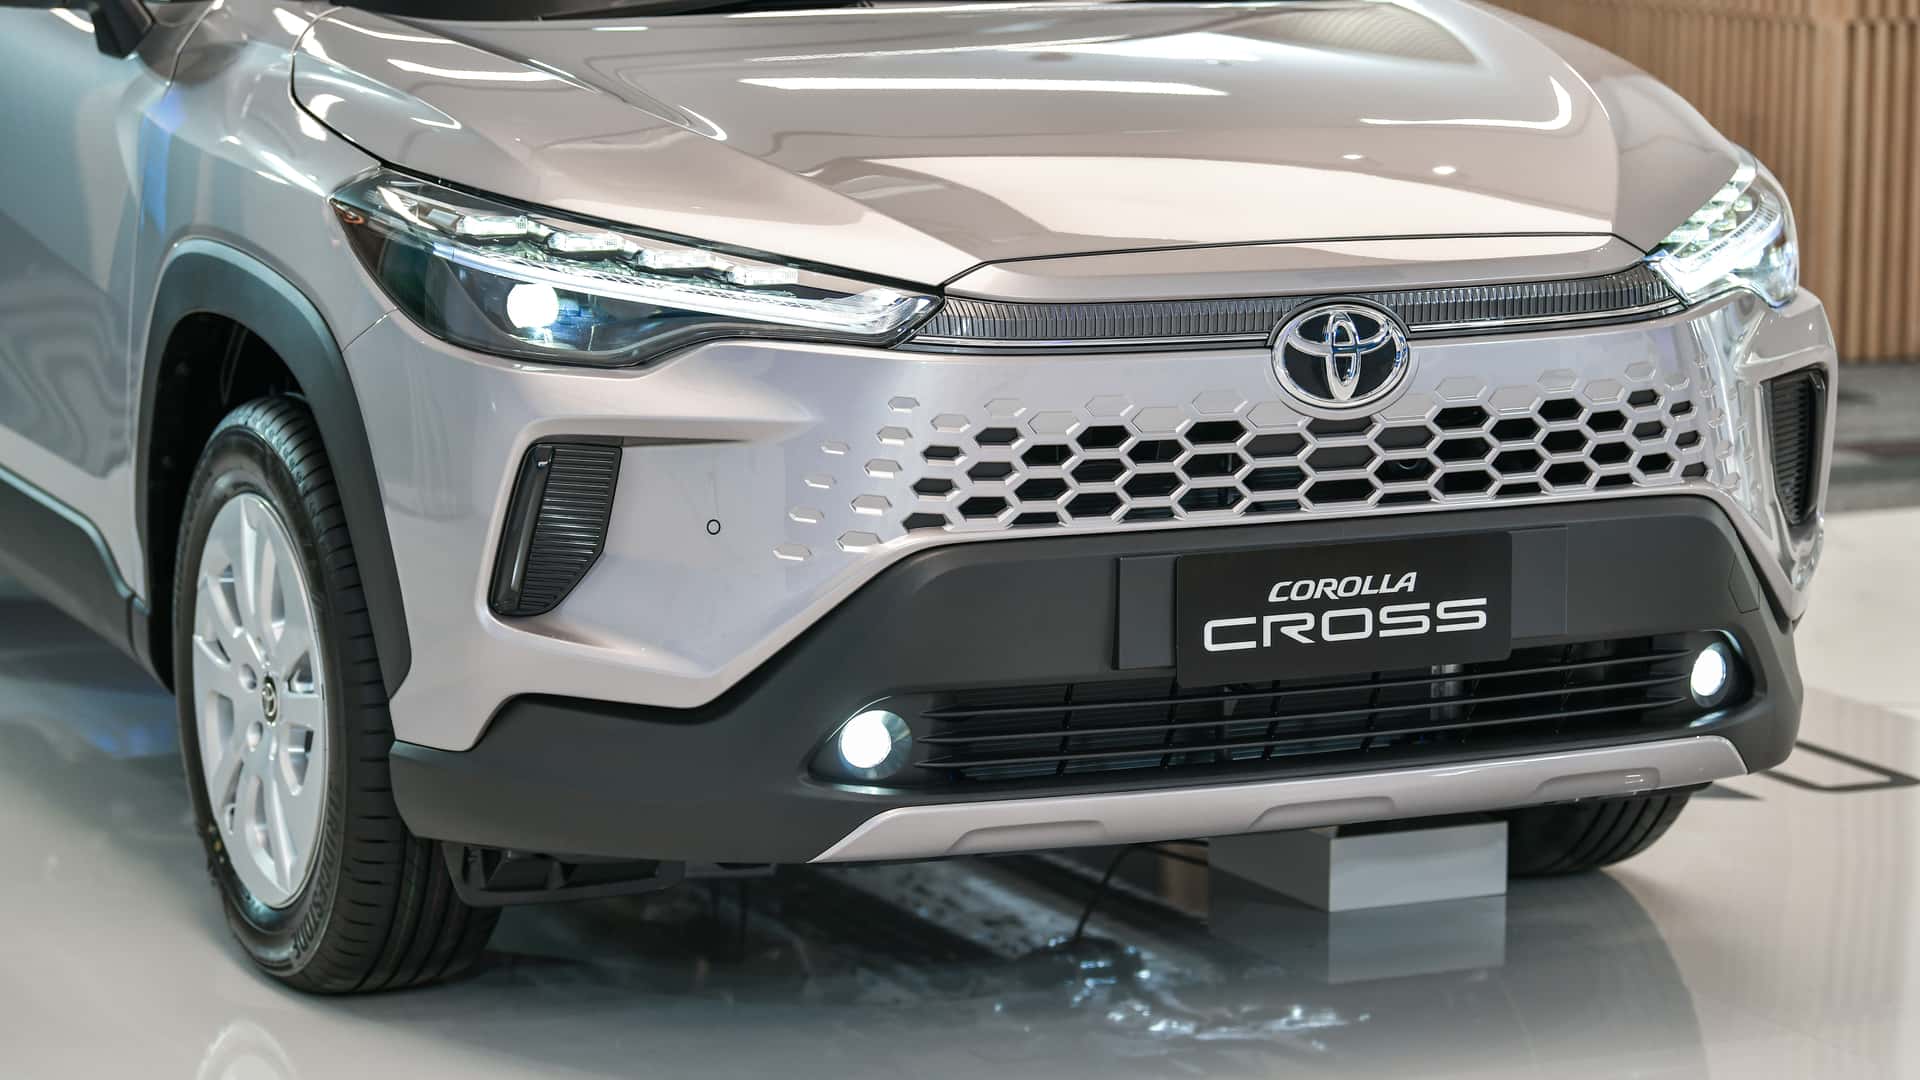 丰田在泰国推出新款corolla cross,国内会引入吗?